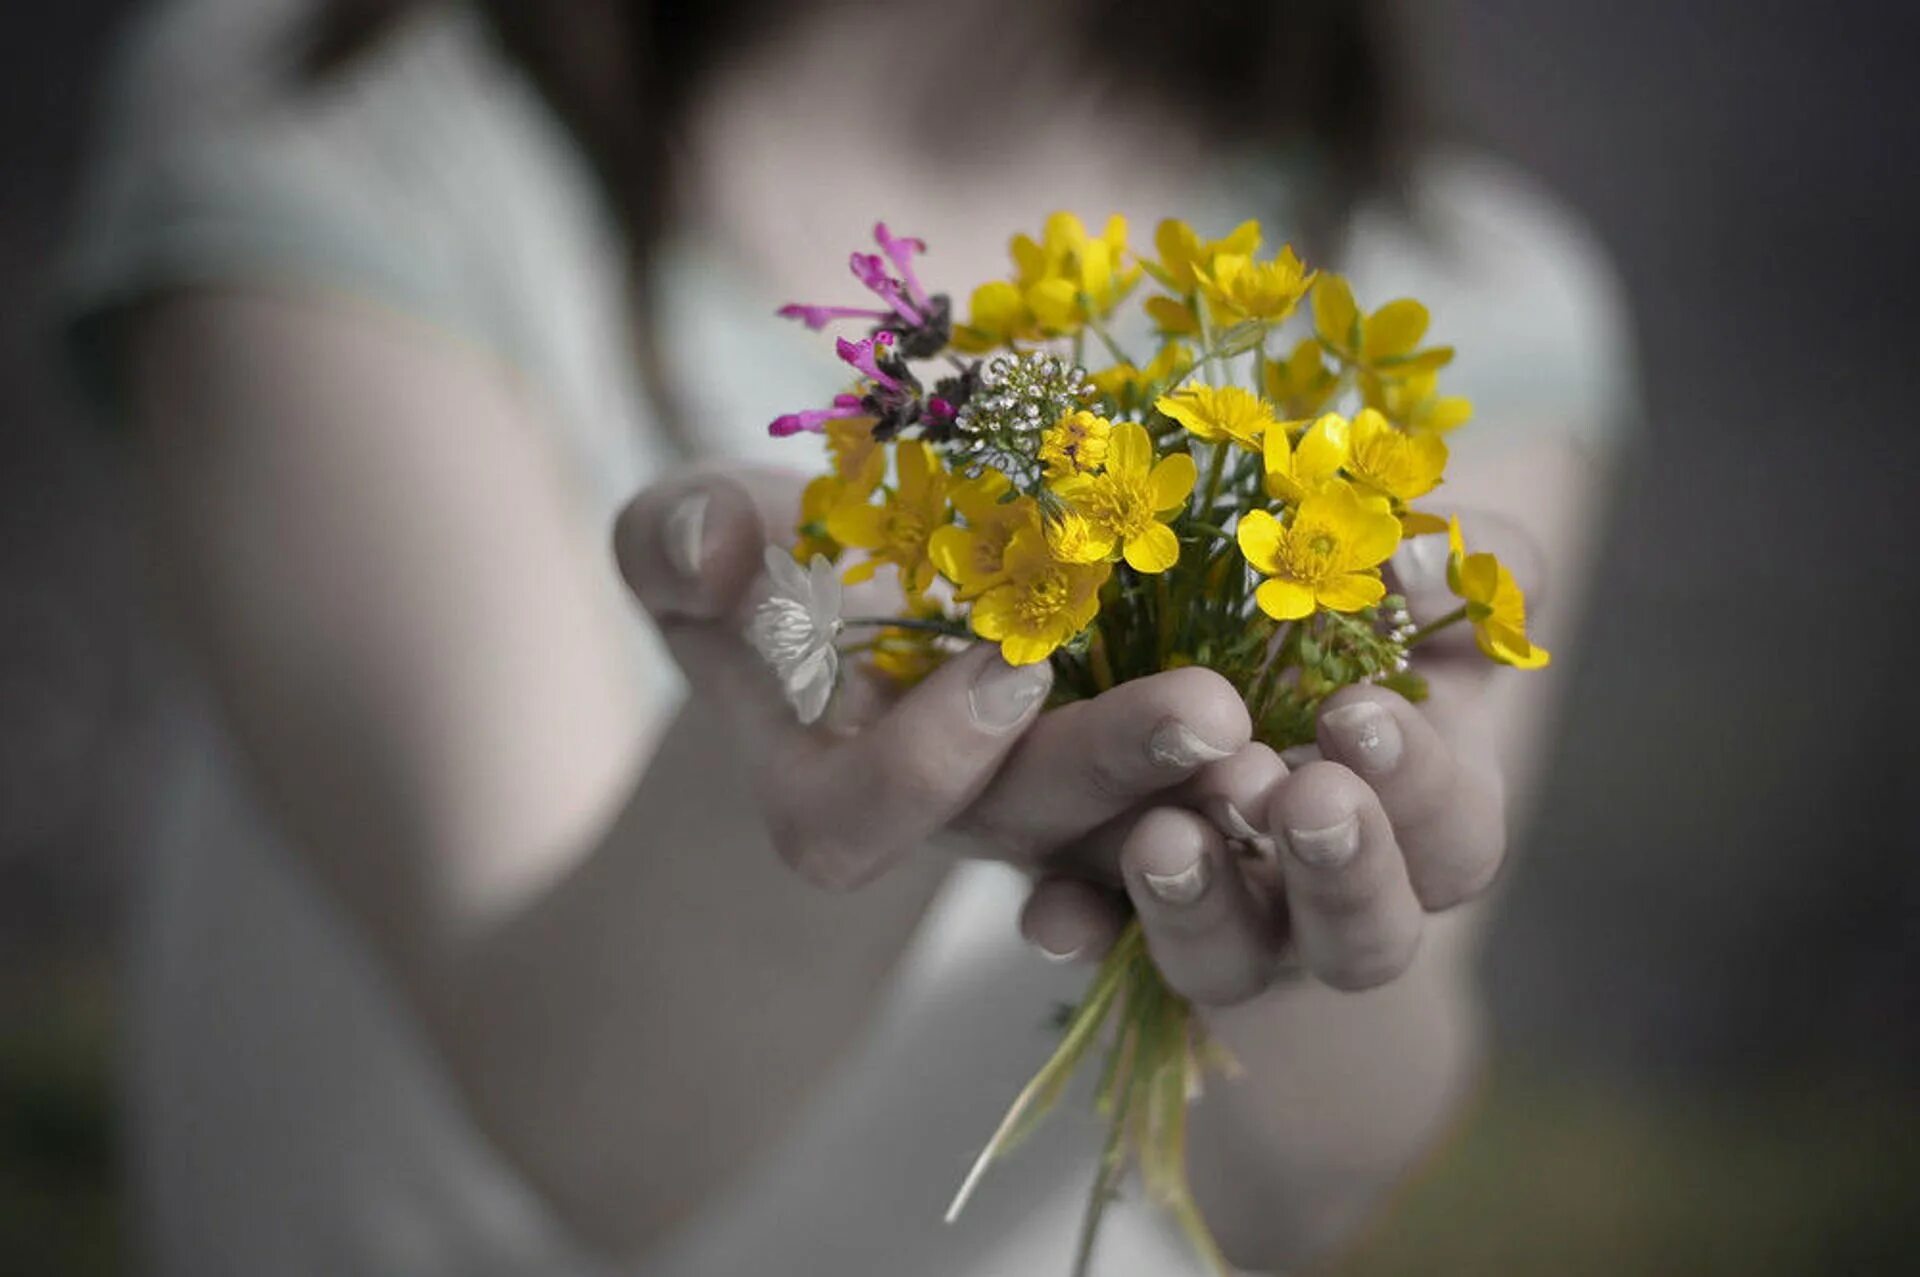 Где любовь живет там всегда цветы. Цветы в ладонях. Цветы радости. Цветы радости жизни. Счастье в руках.